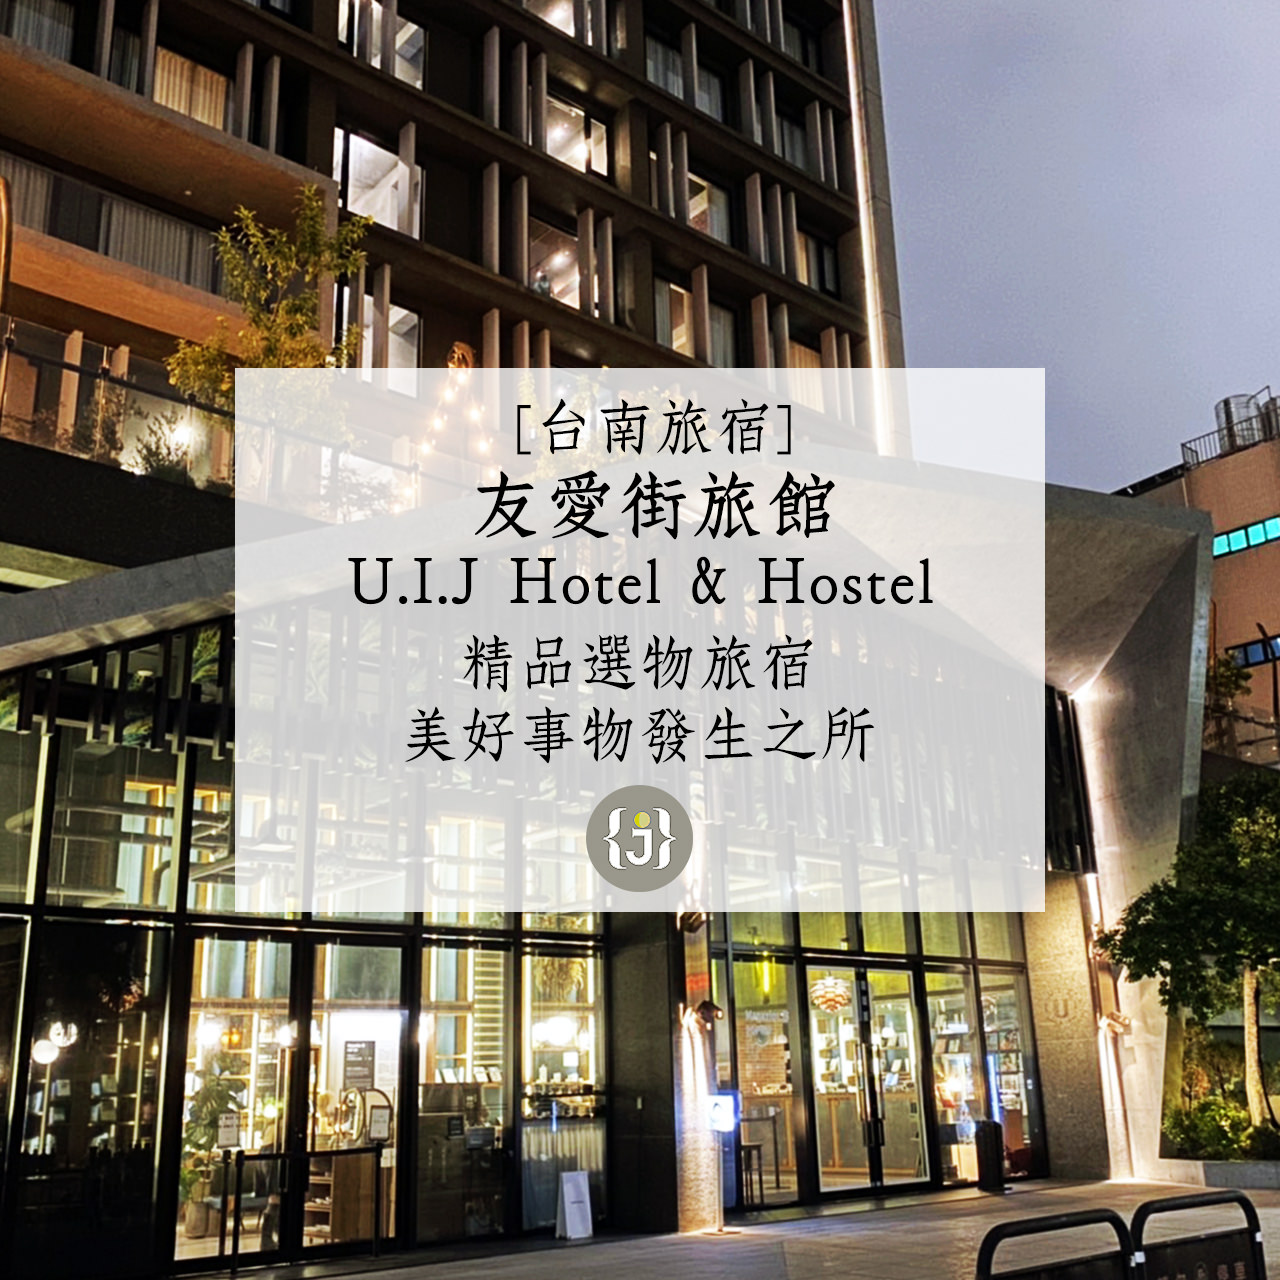 【台南旅宿】友愛街旅館U.I.J Hotel Hostel 精品選物旅宿 美好事物發生之所